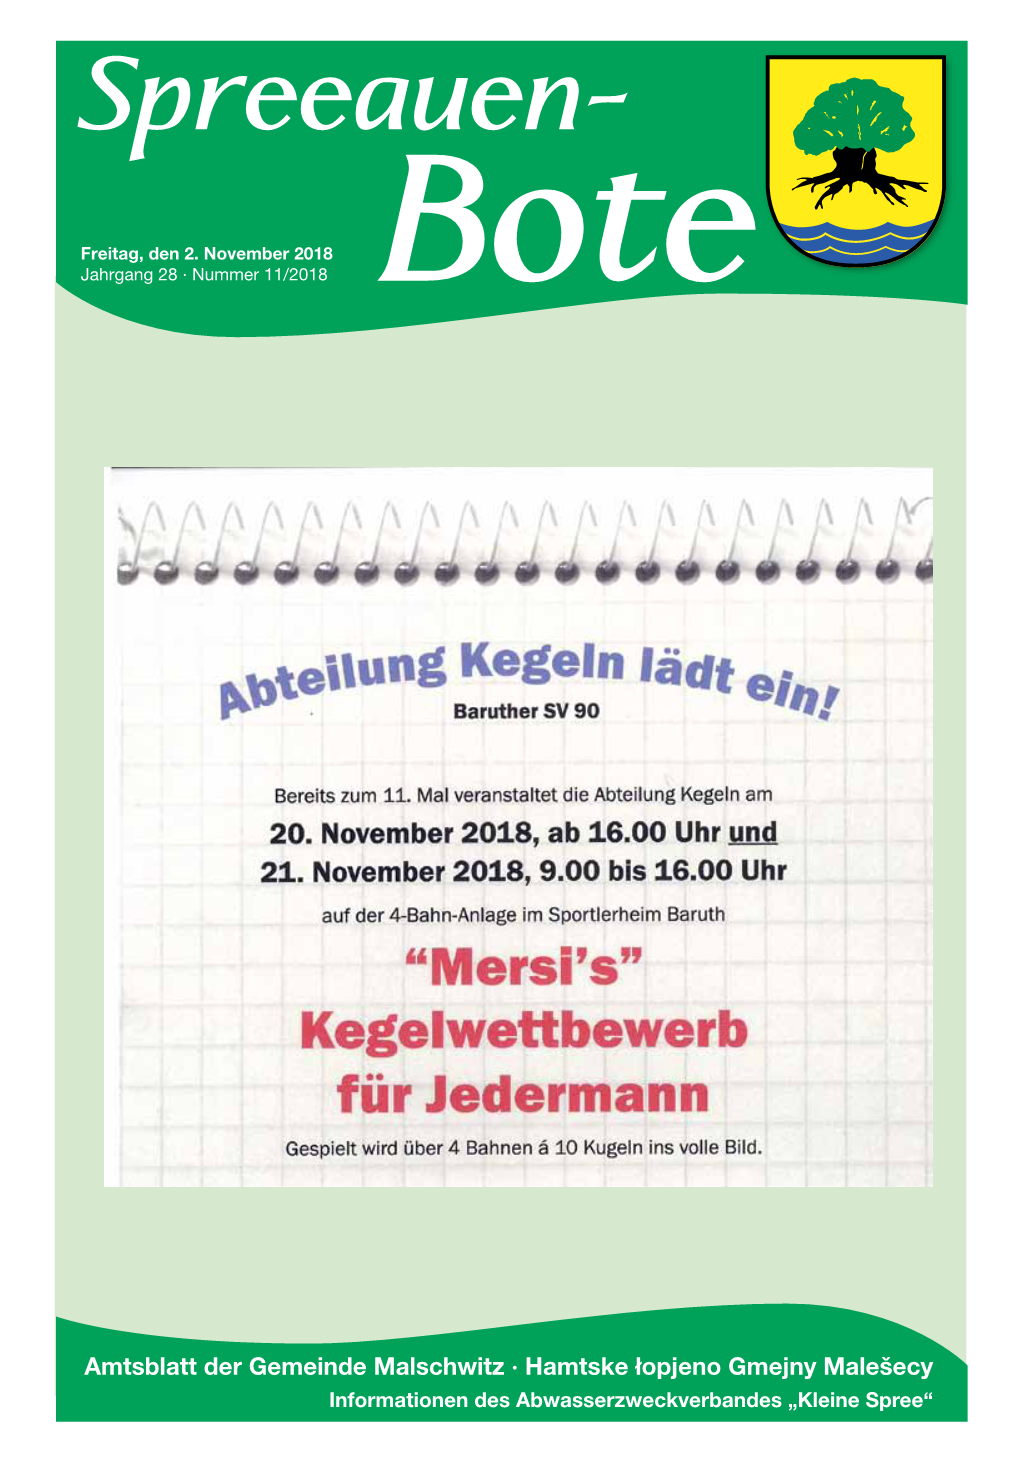 Spreeauen-Bote-November18.Pdf